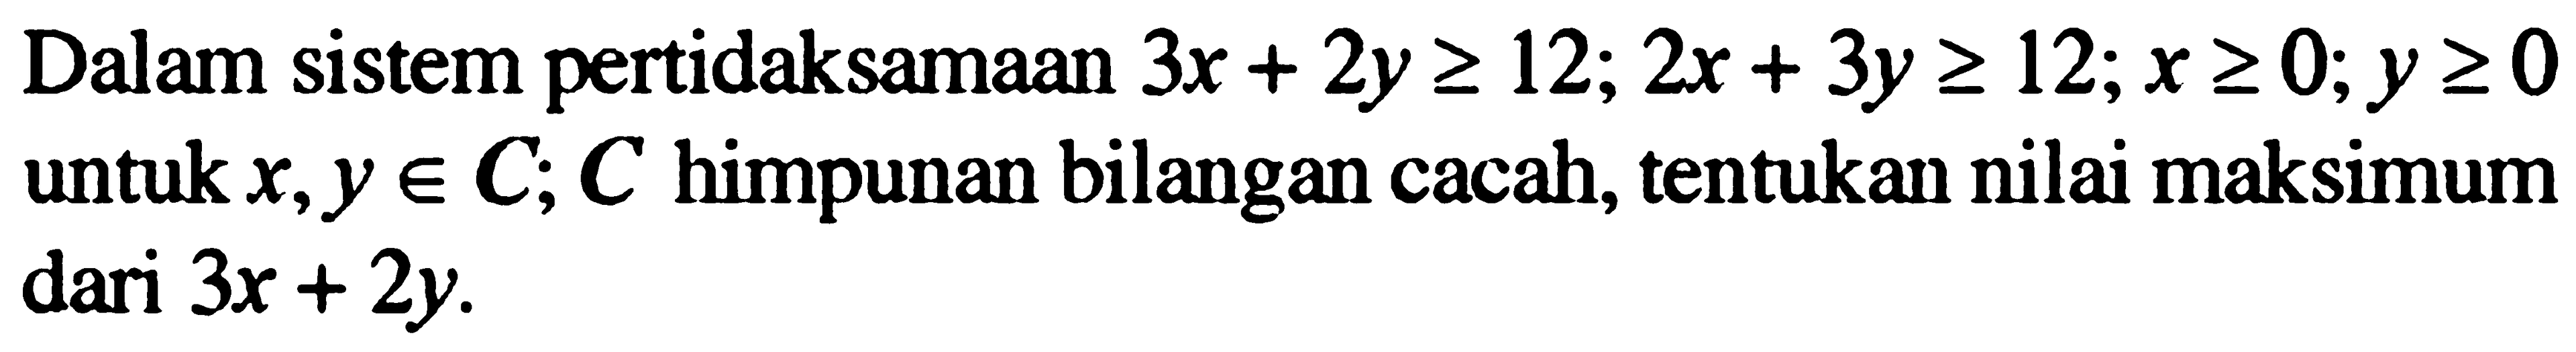 Dalam sistem peridaksamaan 3x+2y>=12; 2x+3y>=12; x>=0; y>=0 untuk x,y e C, C himpunan bilangan cacah, tentukan nilai maksimum dari 3x+2y.